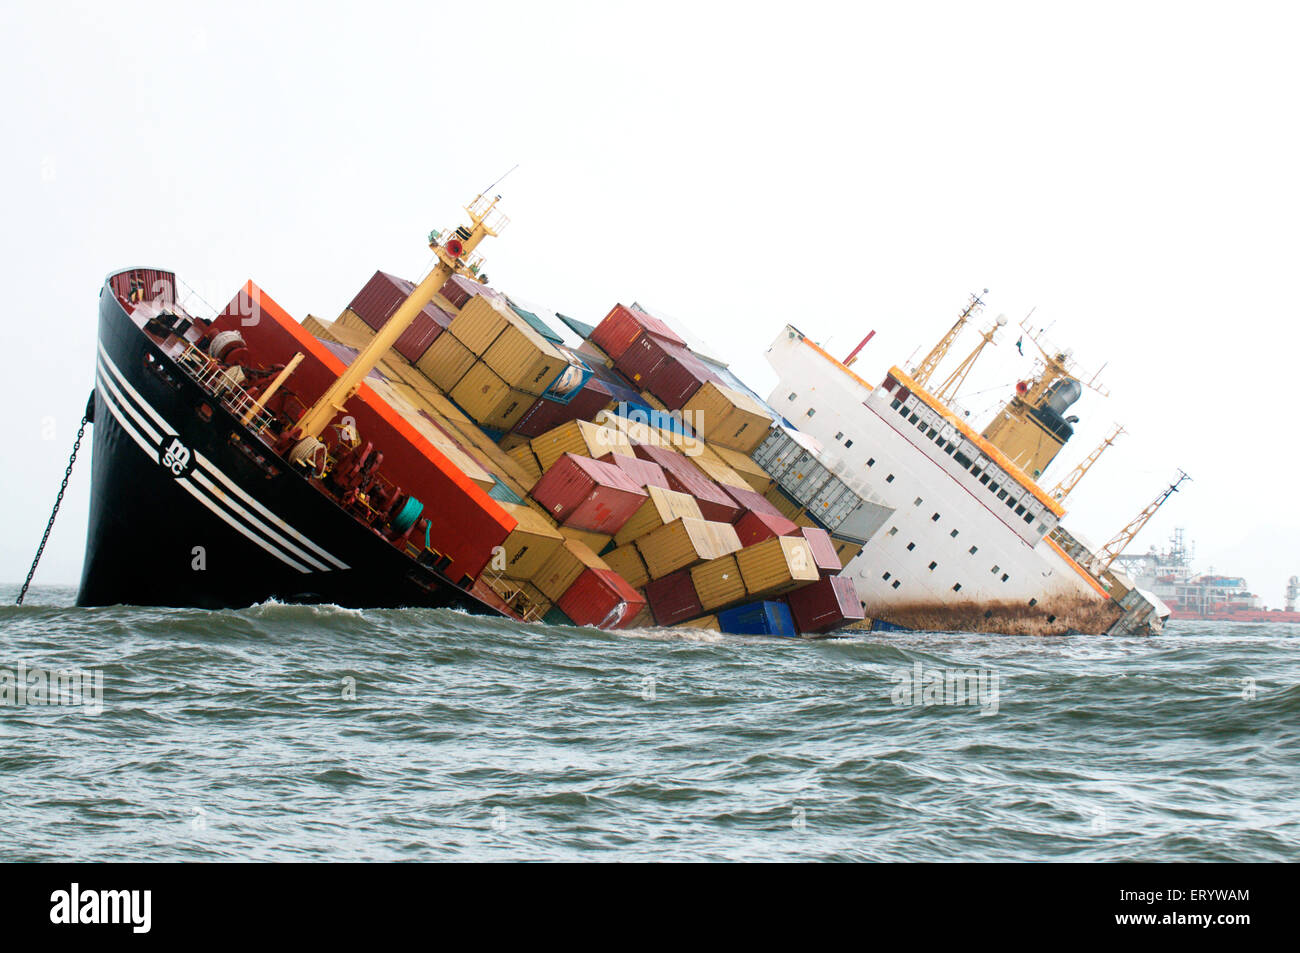 Containerschiffes versenkt gefährlich nach Kollisionsunfall in der Arabischen See Bombay Mumbai Maharashtra Indien Asien-Indianer-Unfall Asiatisch Stockfoto